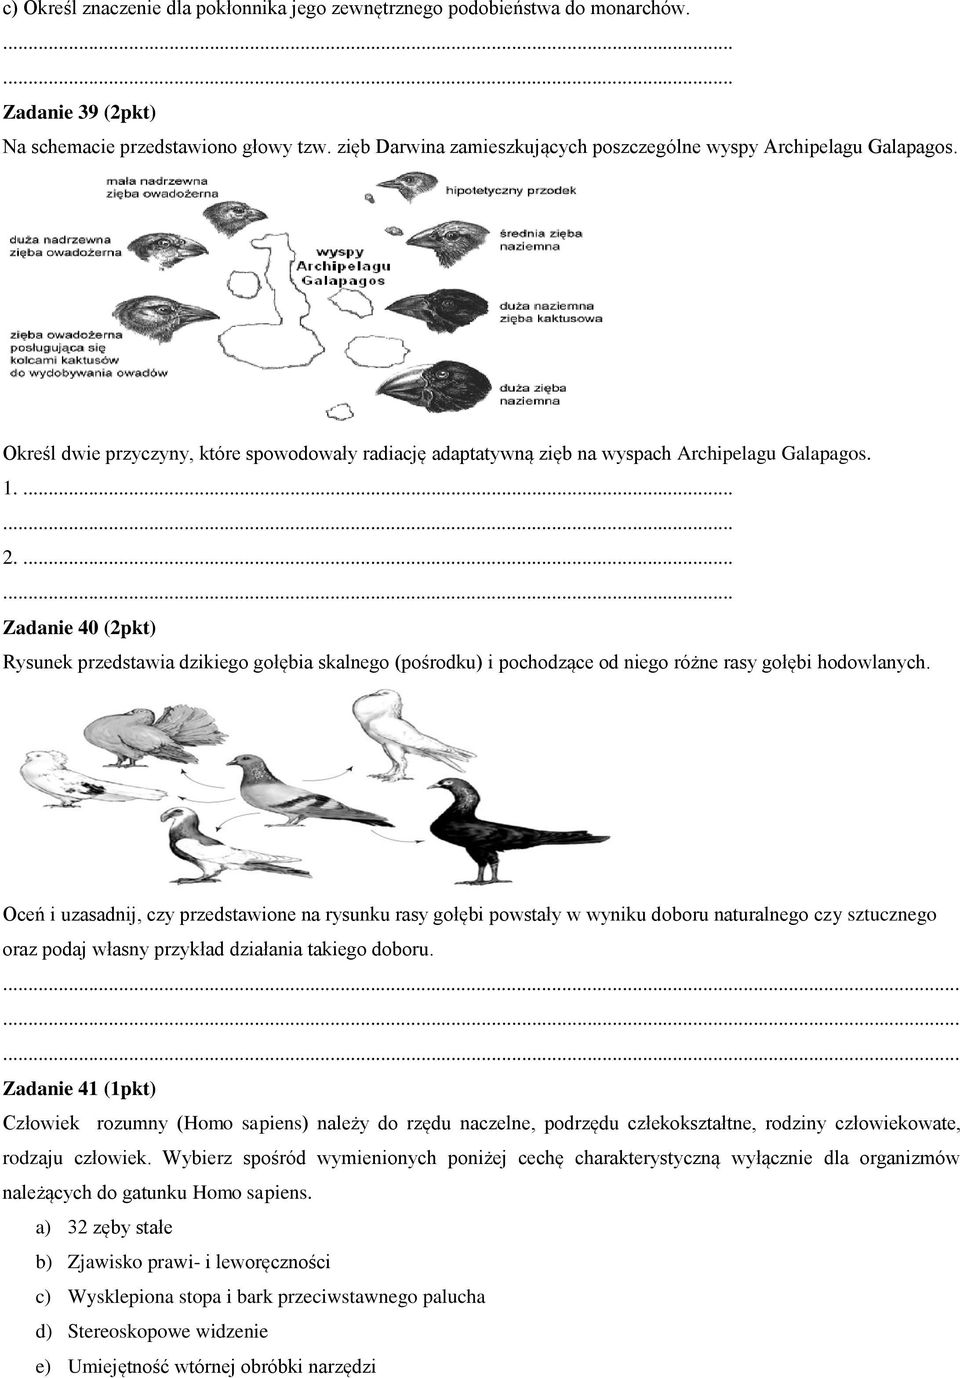 ...... Zadanie 40 (2pkt) Rysunek przedstawia dzikiego gołębia skalnego (pośrodku) i pochodzące od niego różne rasy gołębi hodowlanych.